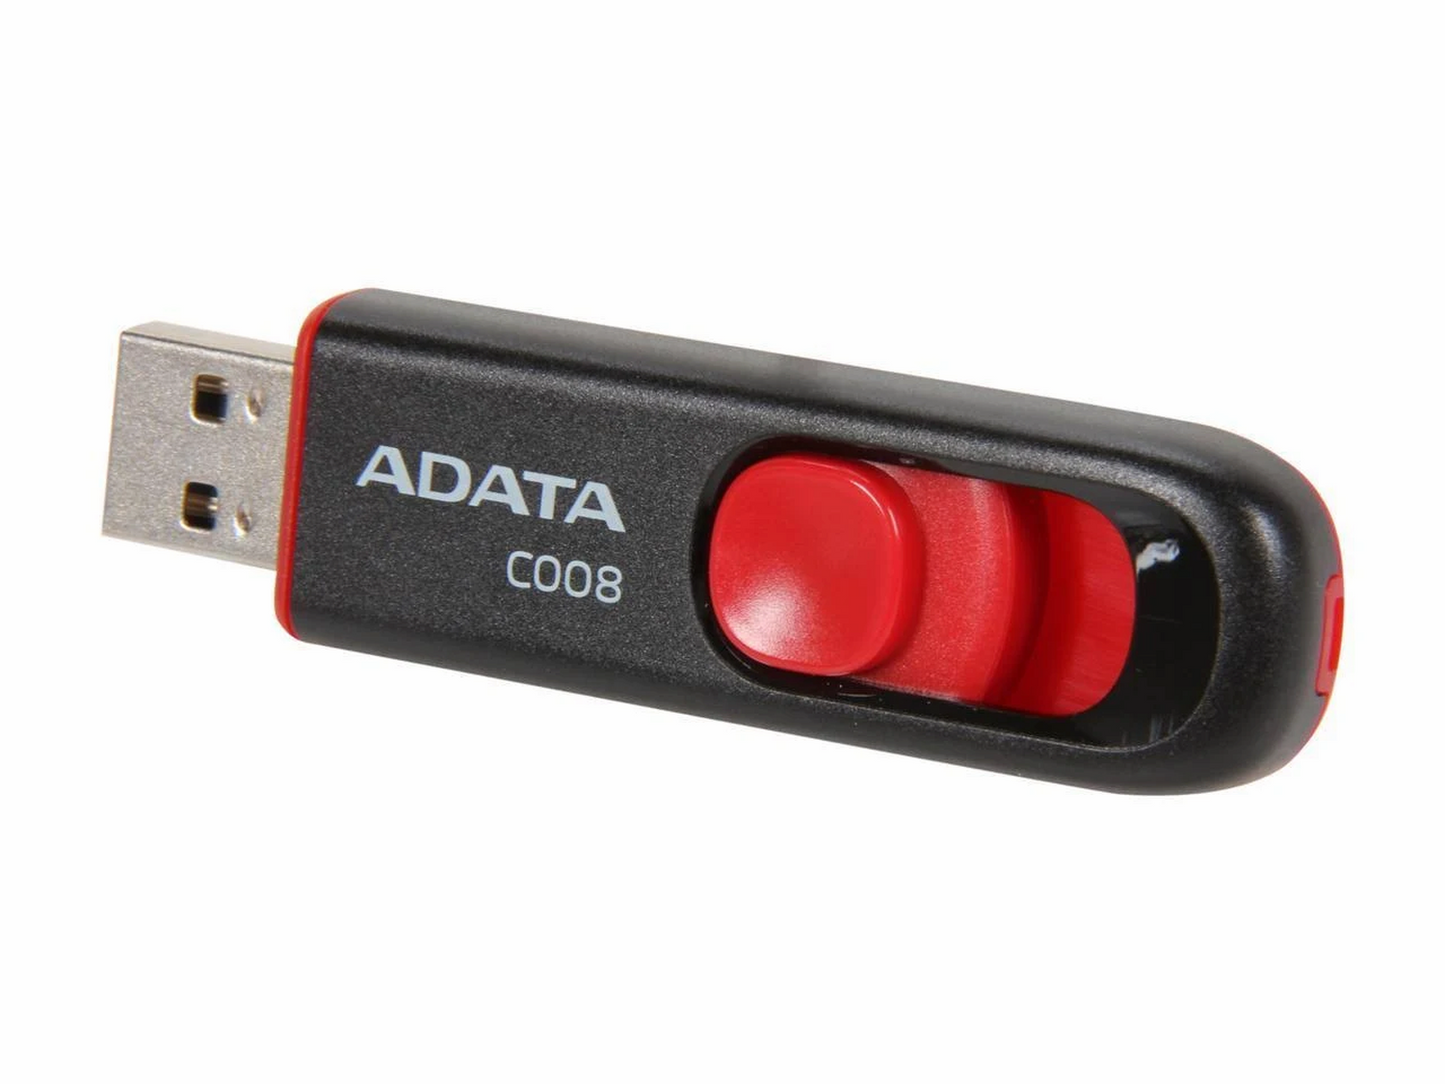 Memoria USB Adata Retractil C008 32GB USB 2.0 Negro/Rojo